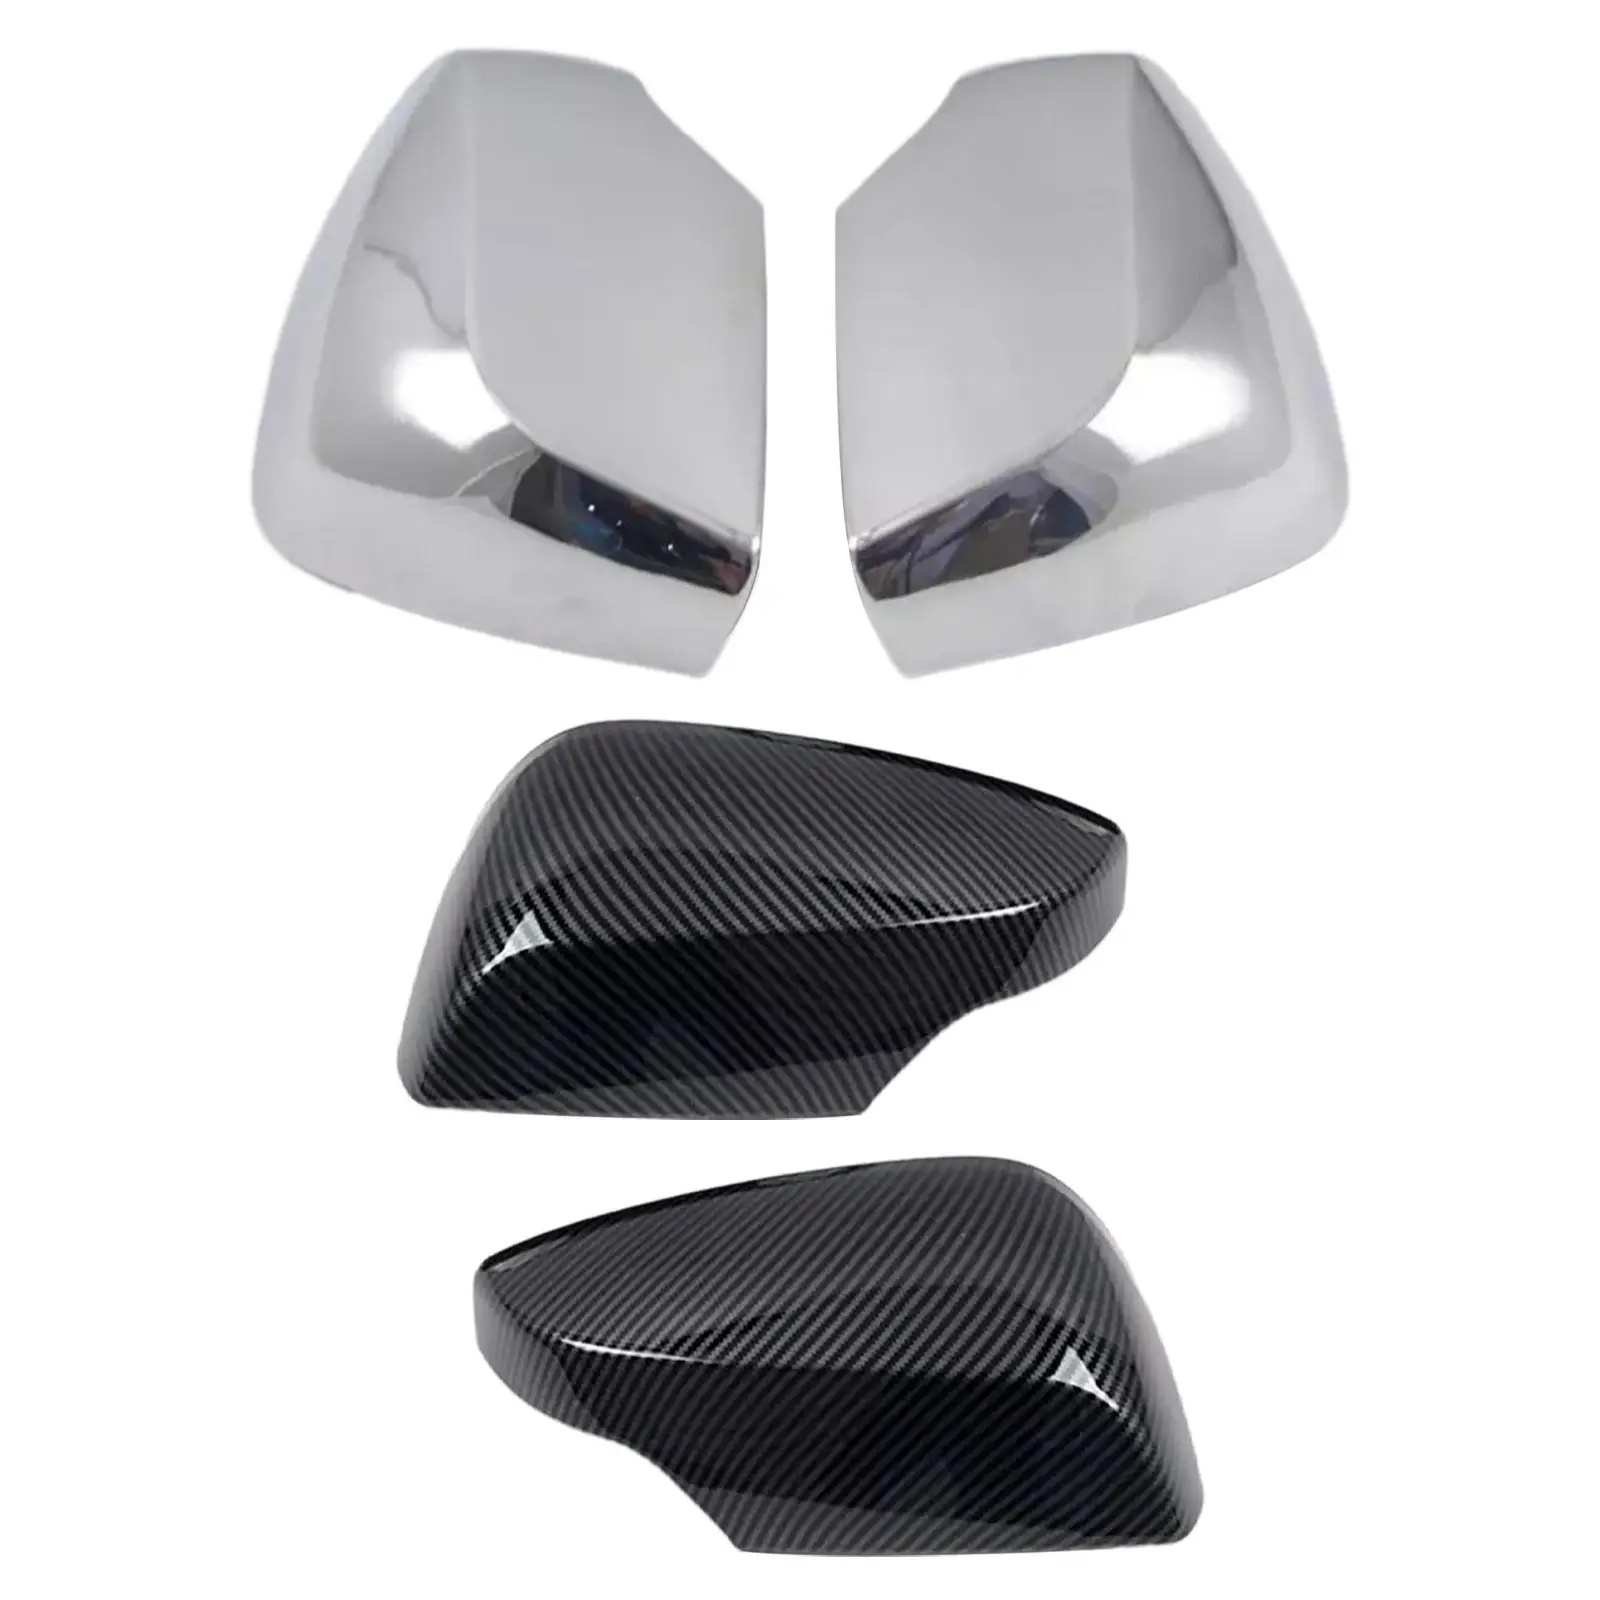 2x Side View Mirror Cover Caps Car Accessories for Subaru WRX Sti